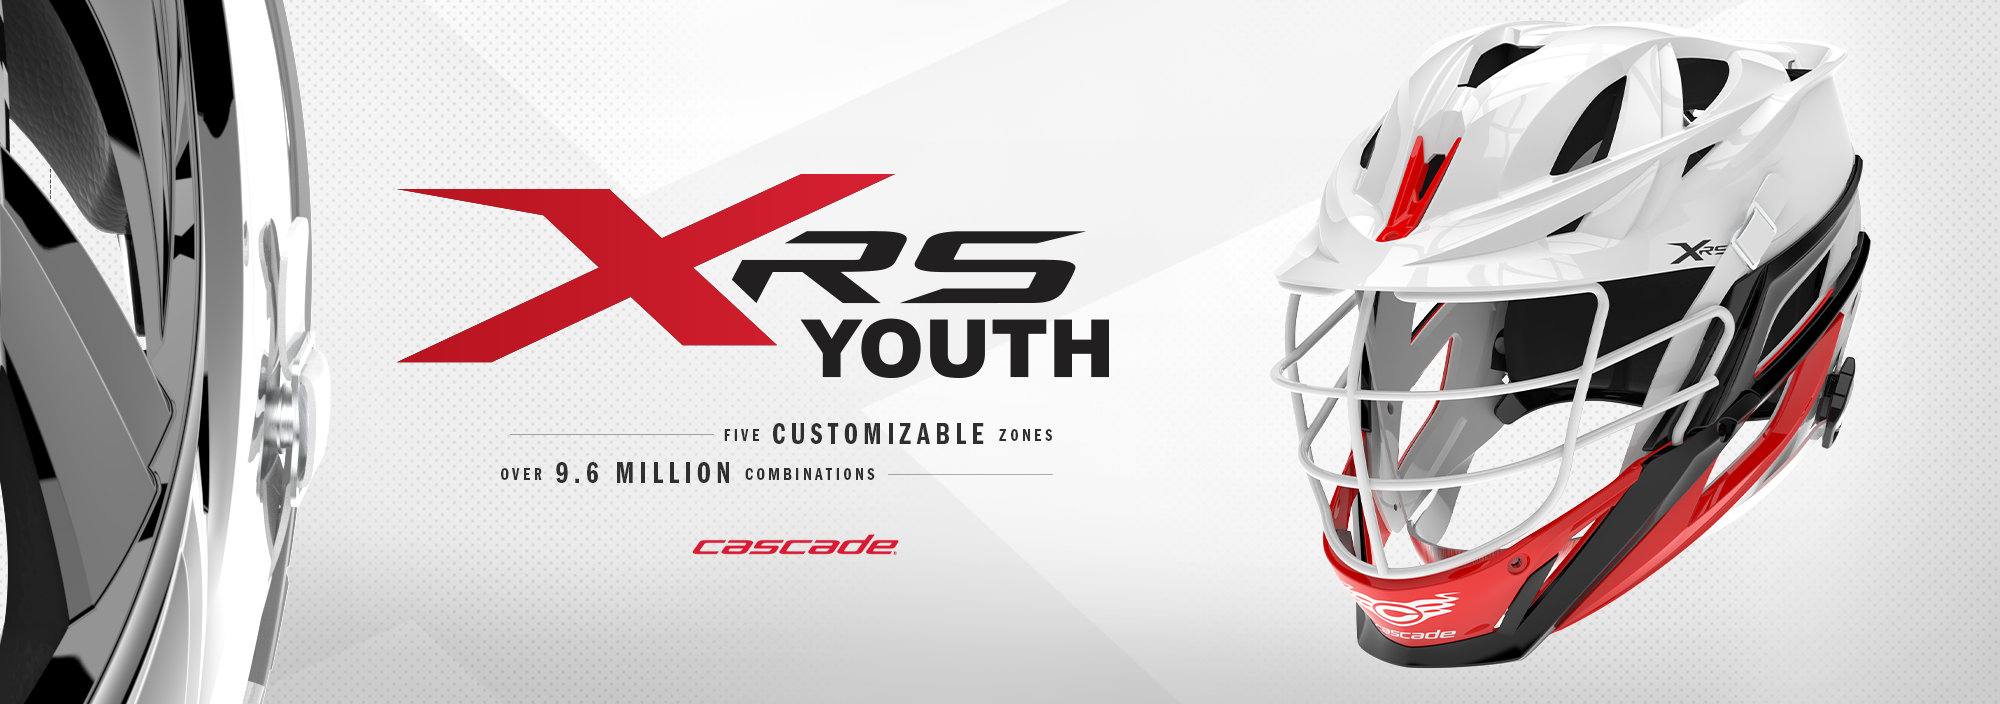 Cascade XRS Custom Youth Helmets